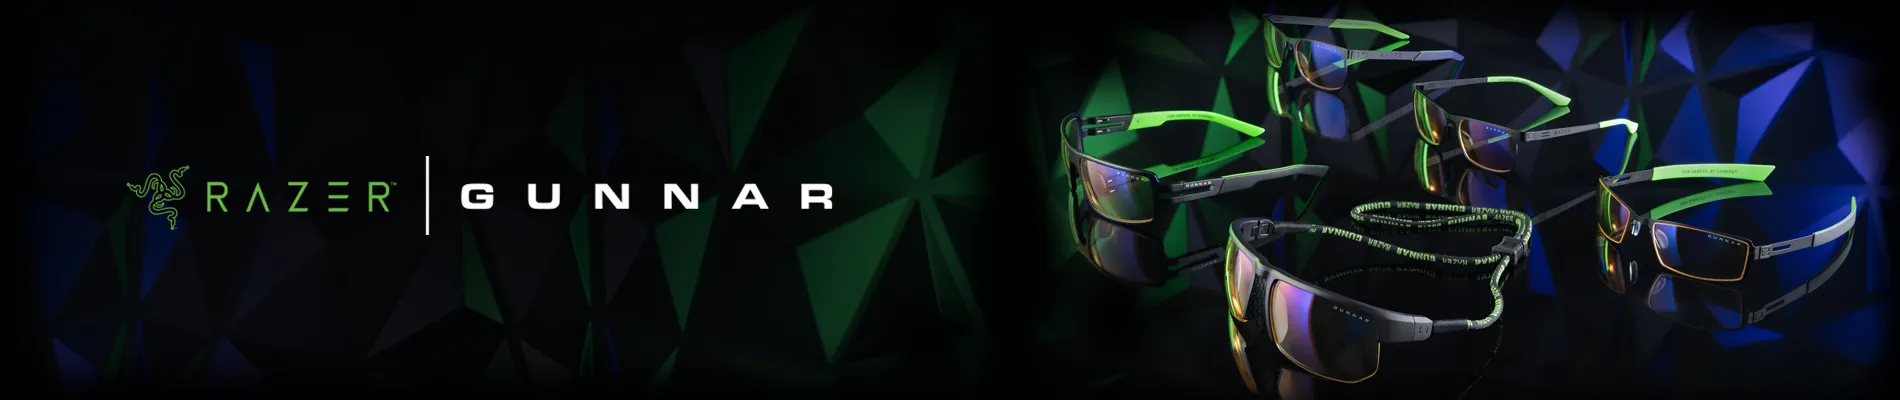 Razer Header Image Refresh V1 - GUNNAR x Razer